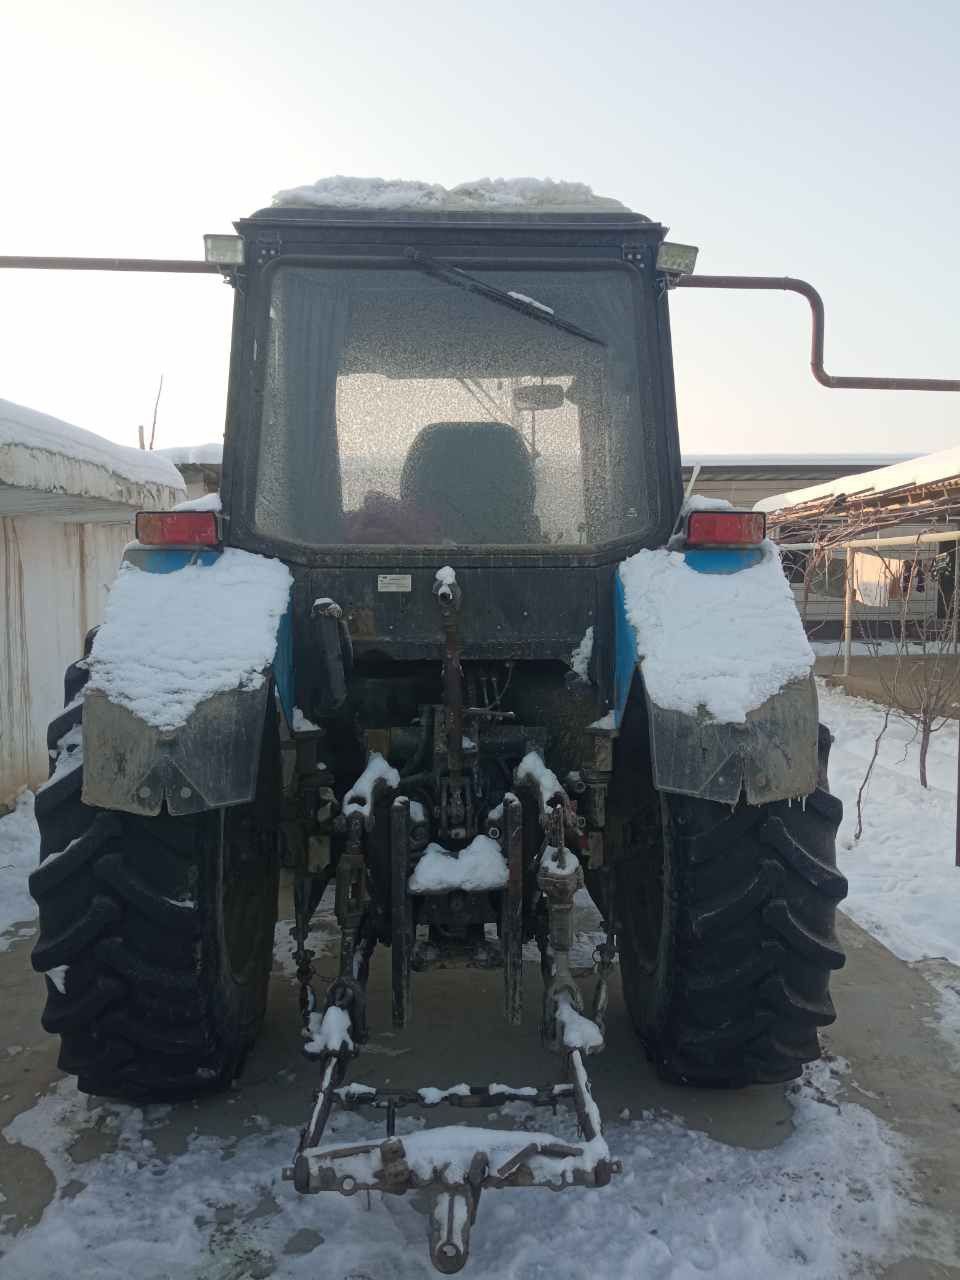 Belarus Traktor sotiladi kelishilgan narxda sirochniga